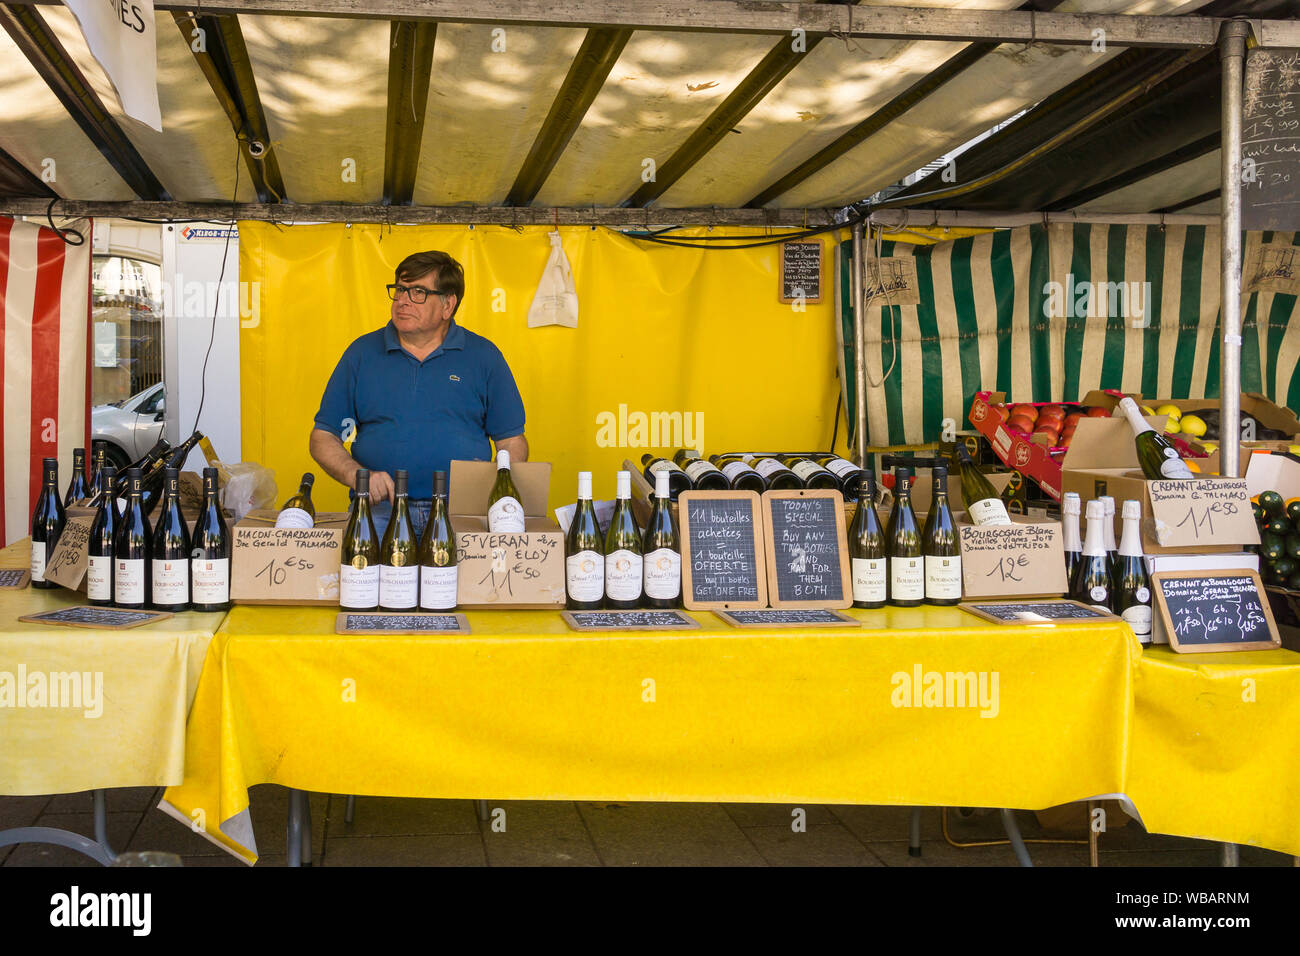 Le marché du vin de Paris - Homme seeling des bouteilles de vin à Paris un marché de producteurs. La France, l'Europe. Banque D'Images